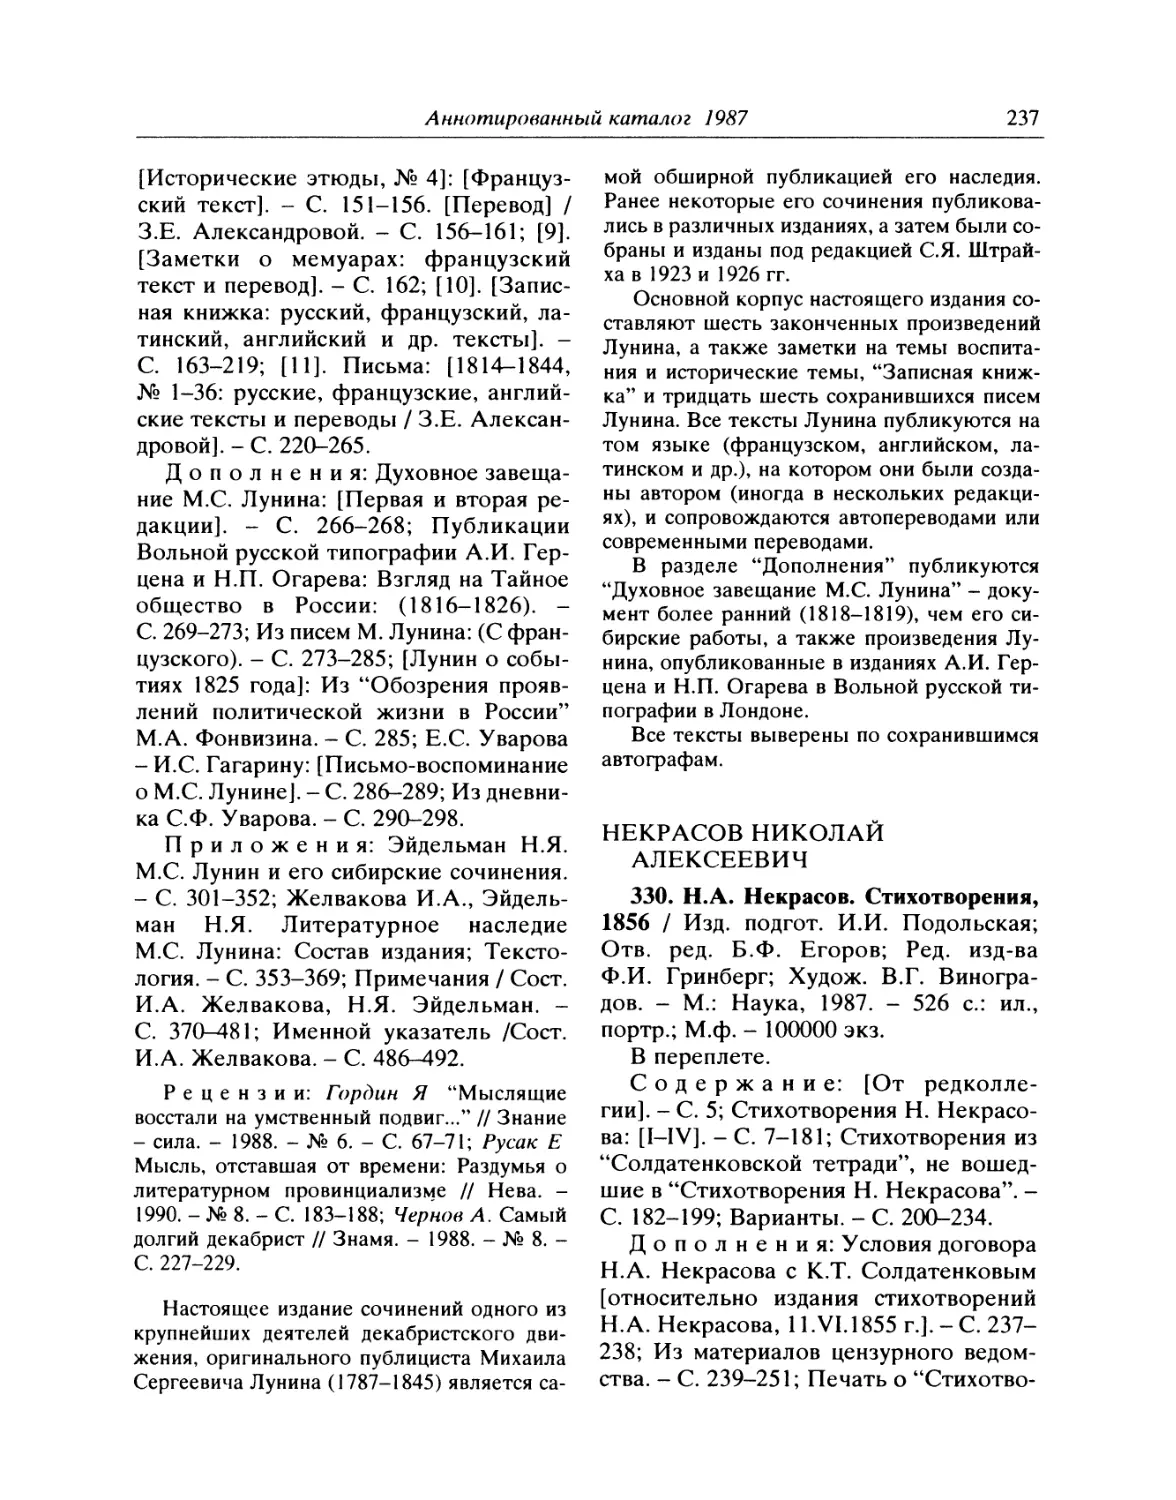 330. Н.А. Некрасов. Стихотворения, 1856